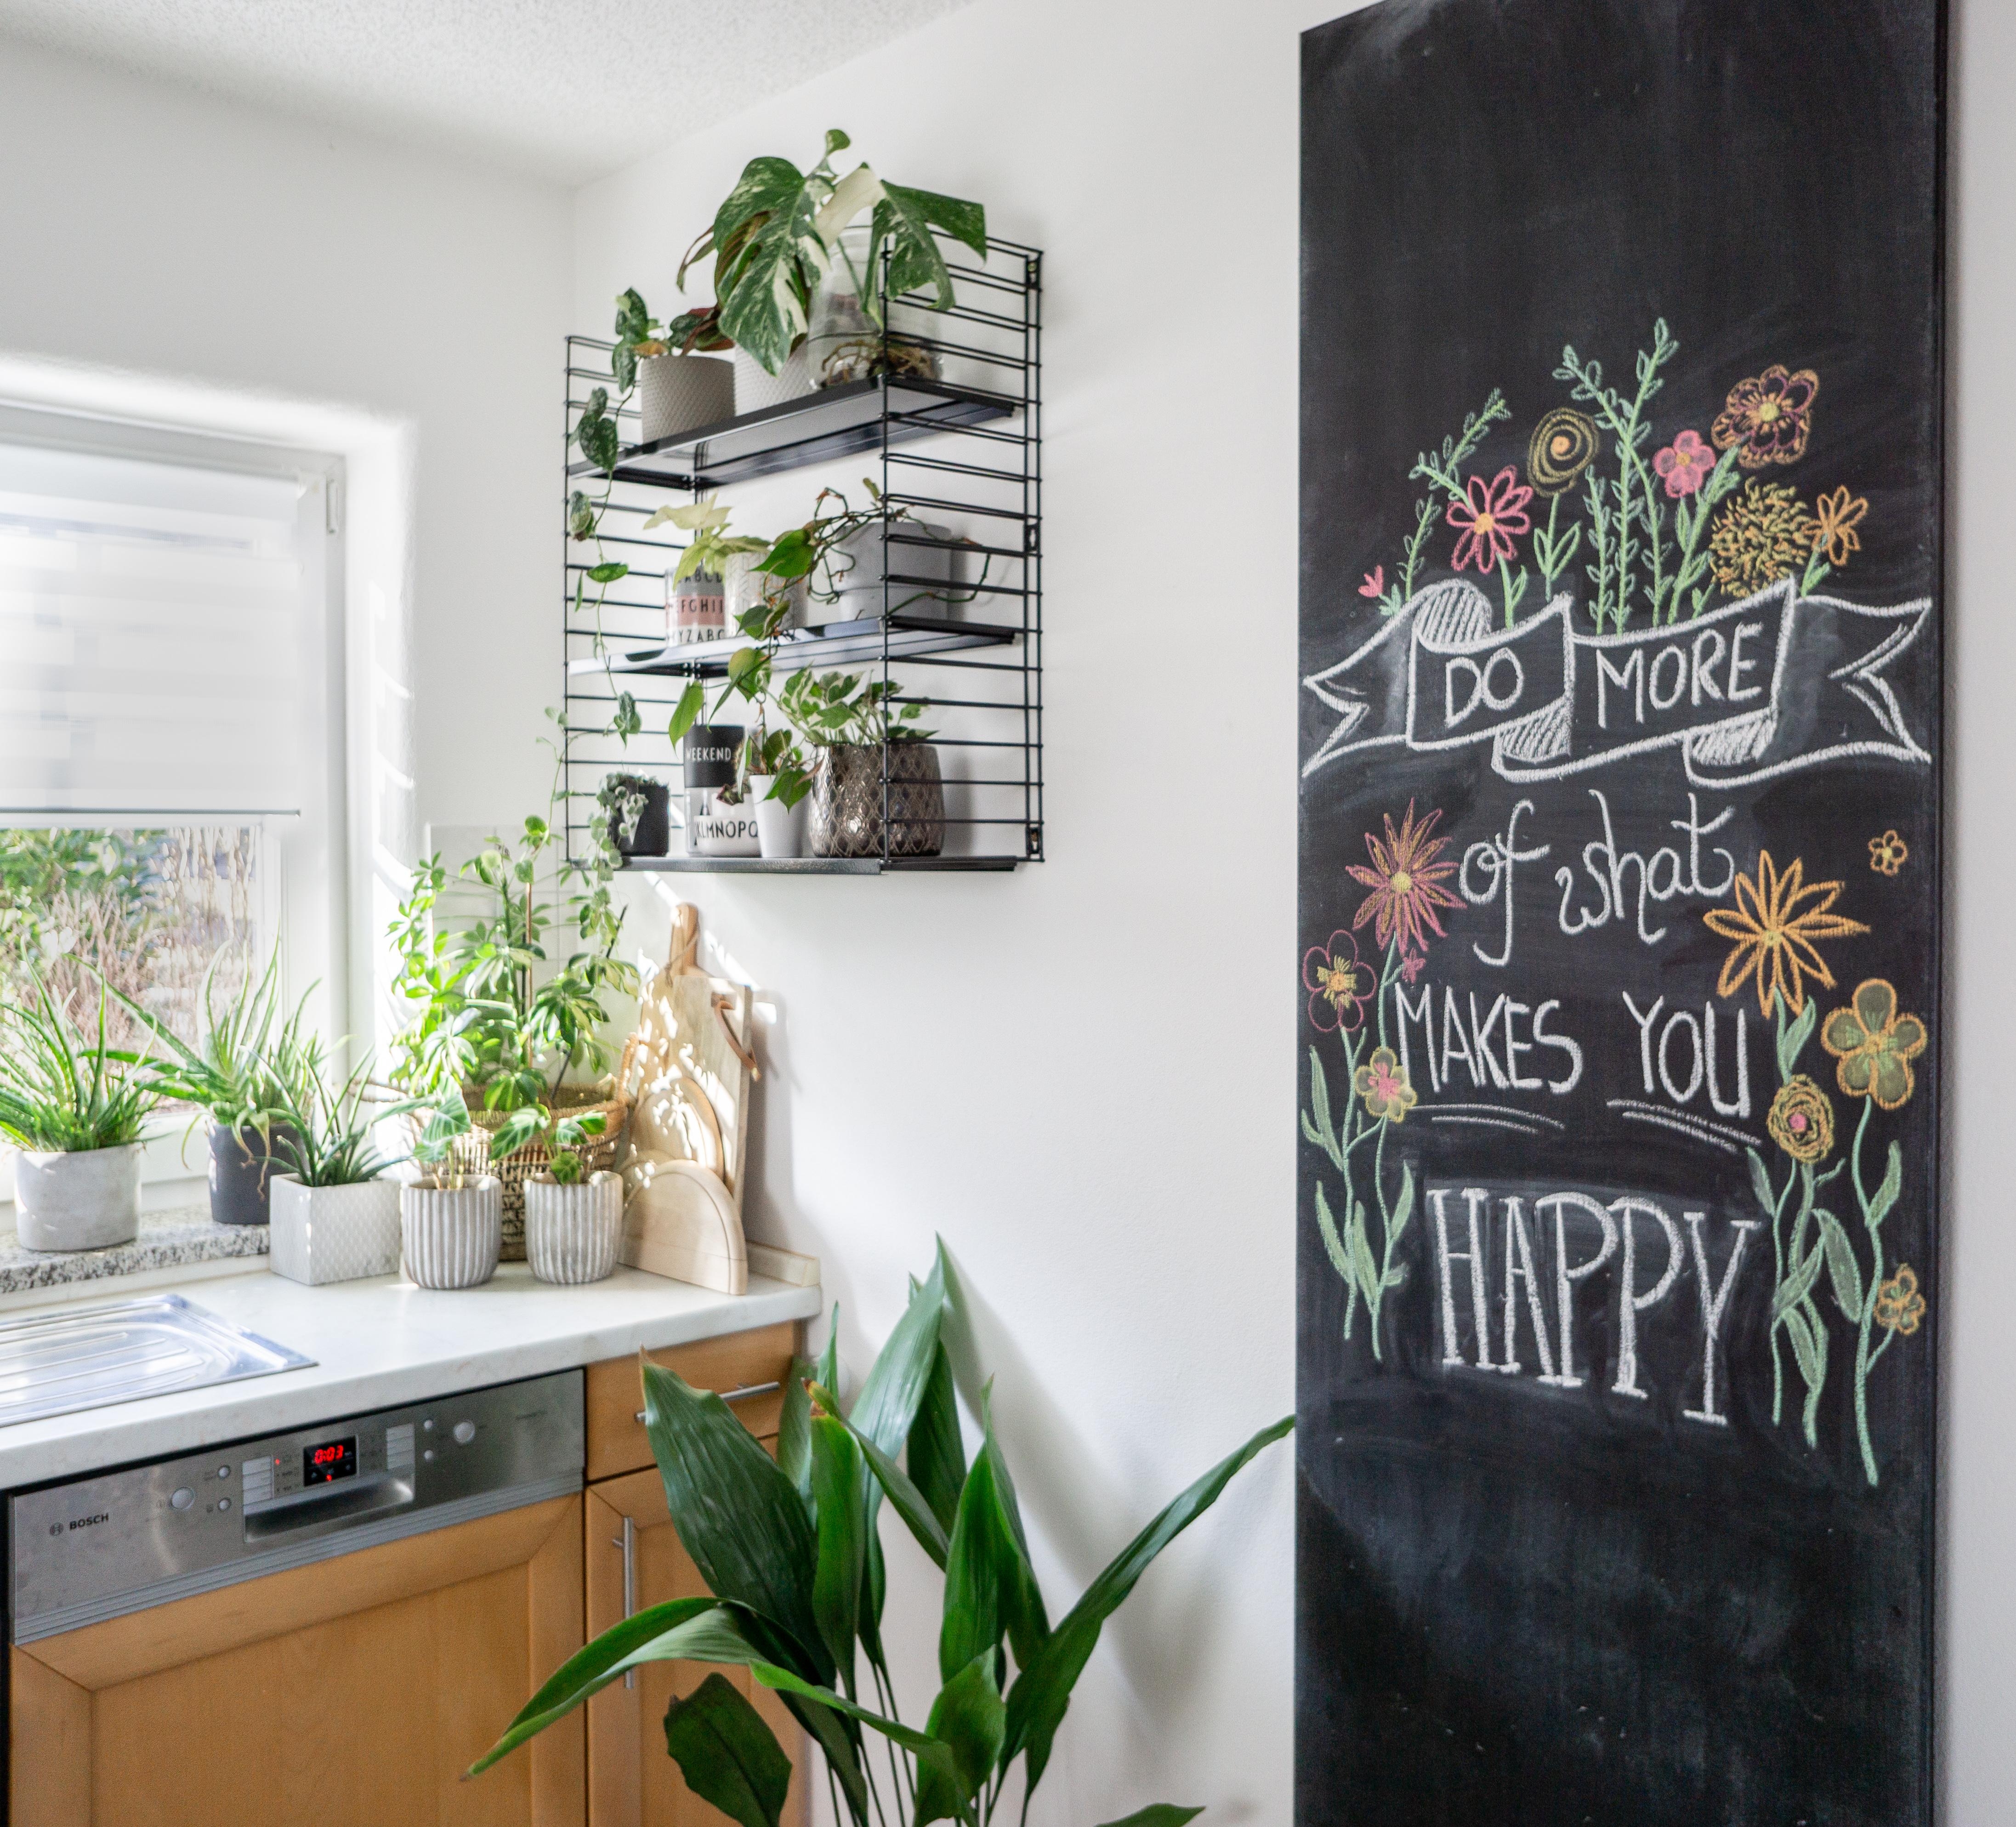 #pflanzenliebe auch in der #küche #solebenwir #zuhauseistesamschönsten #zuhause #tafelwand